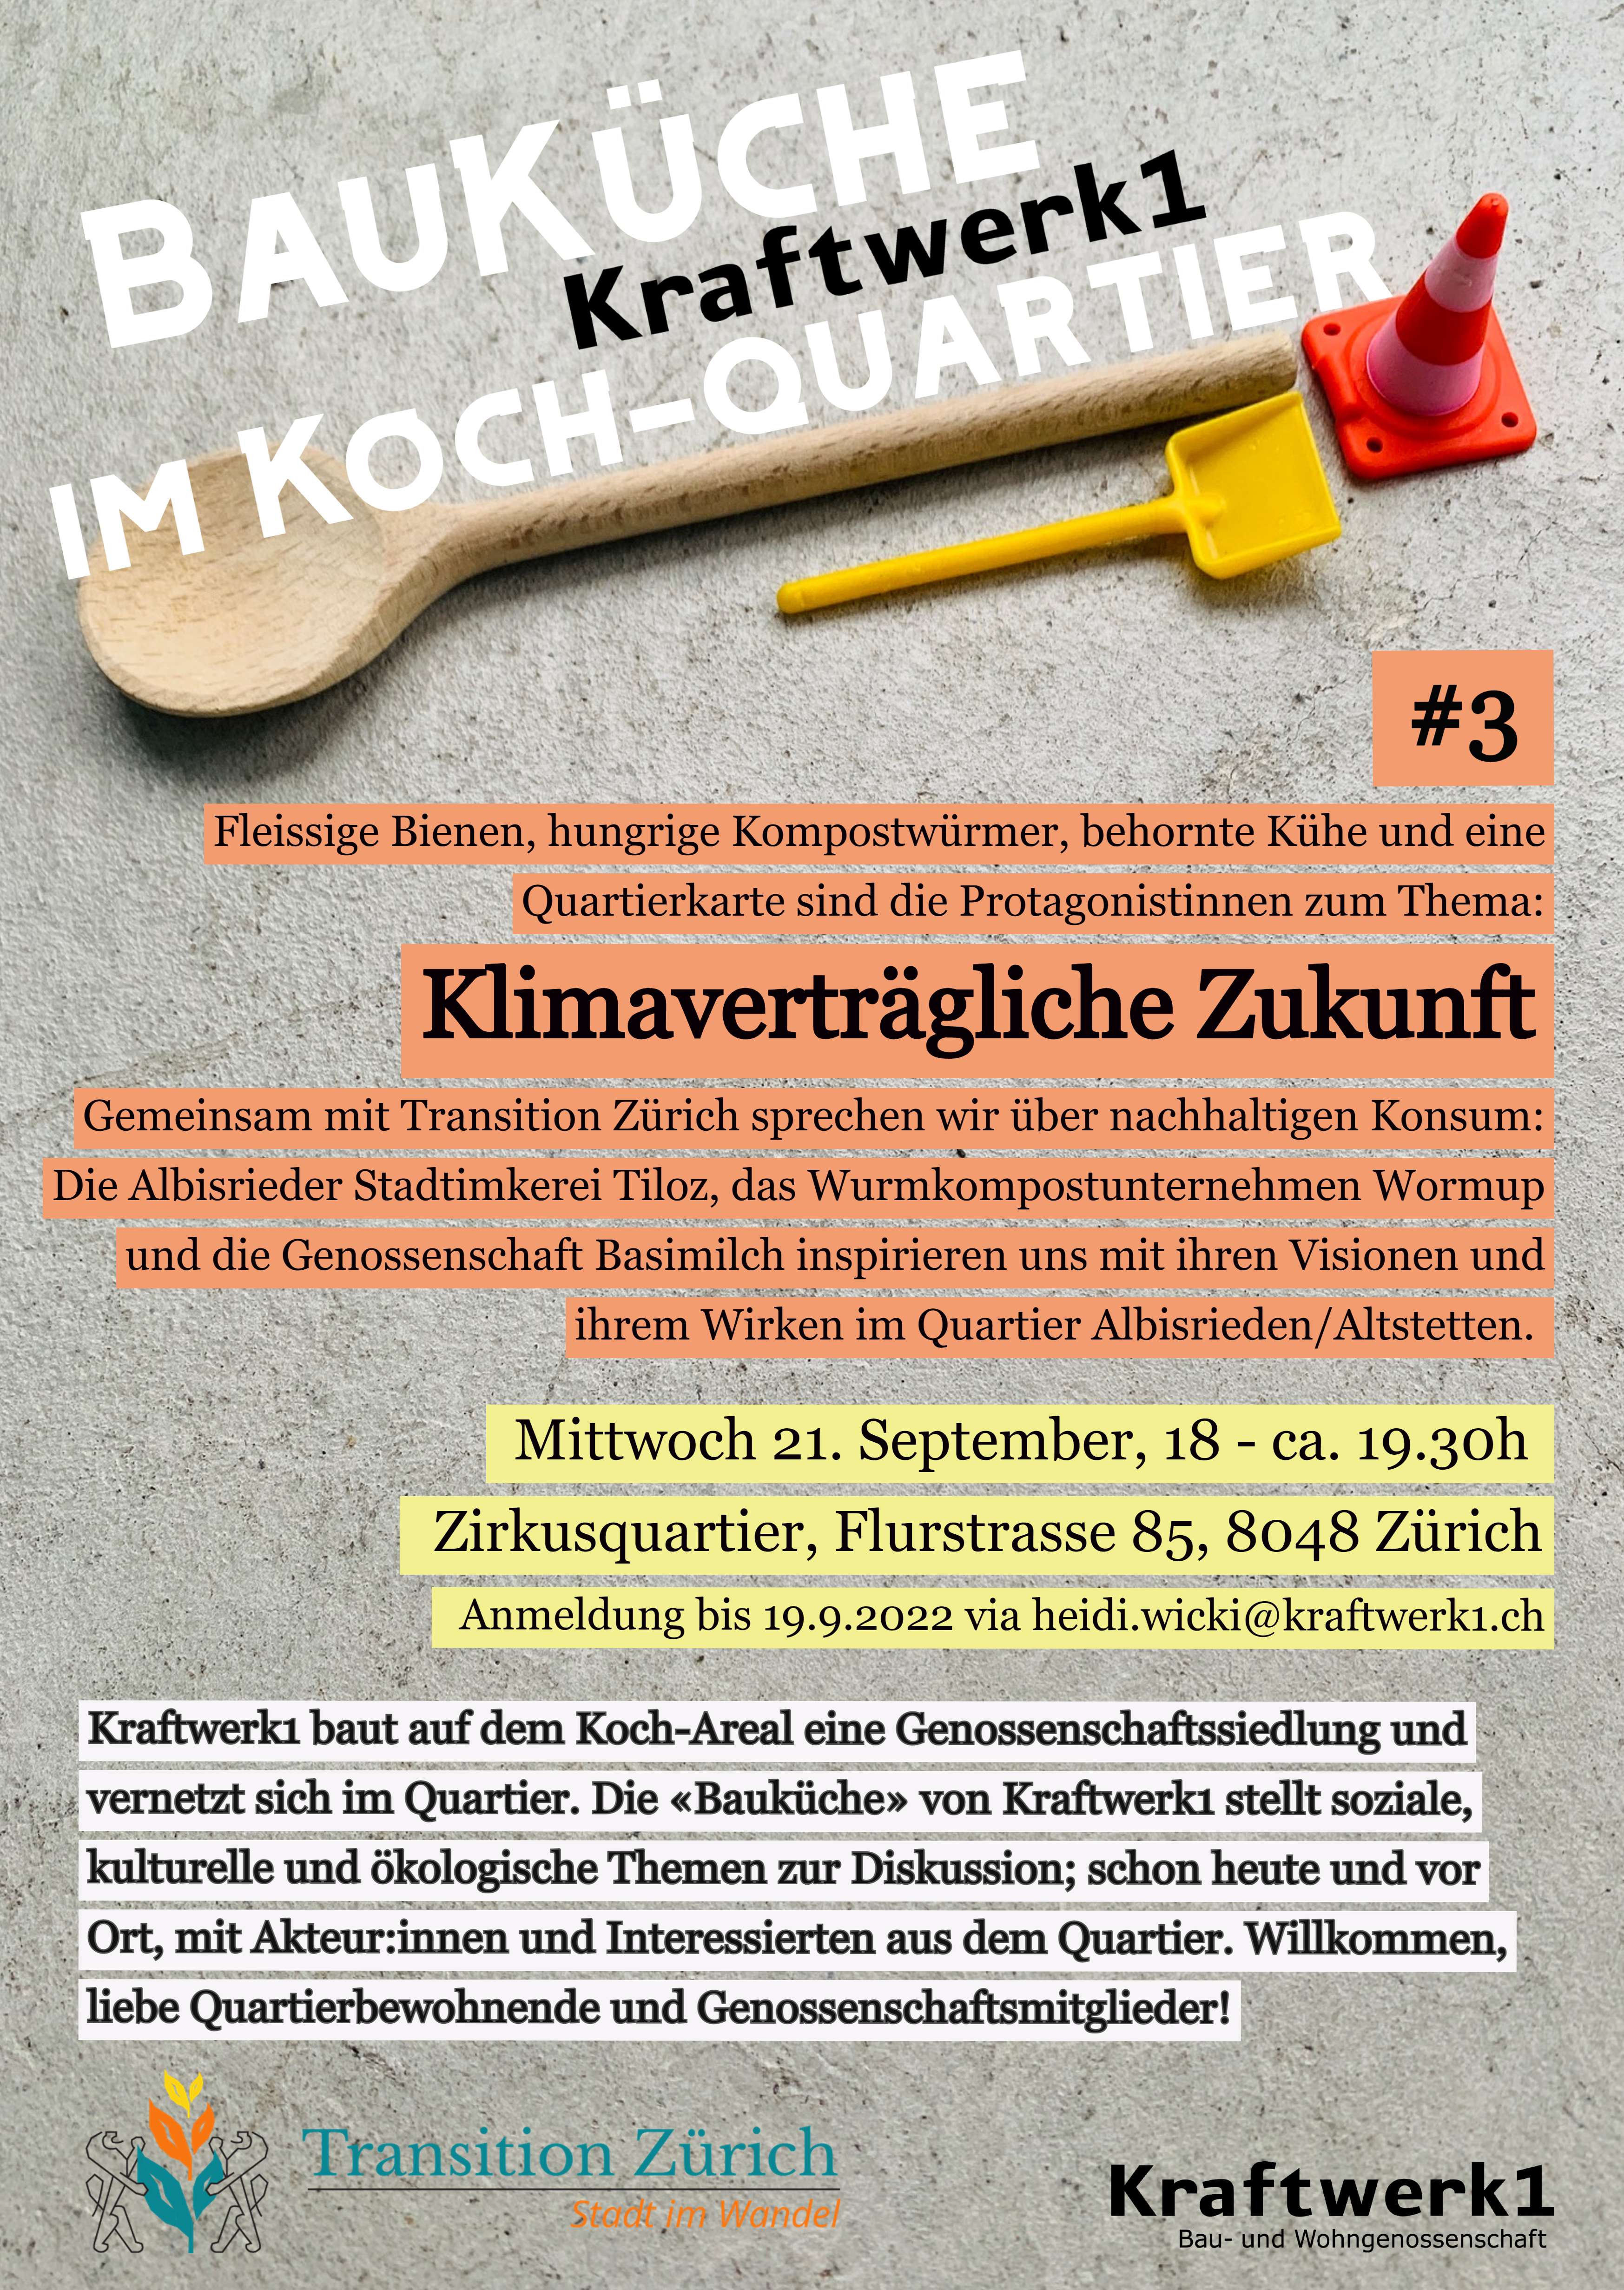 Bauküche #3: Nachhaltiger Konsum mit Transition Zürich 